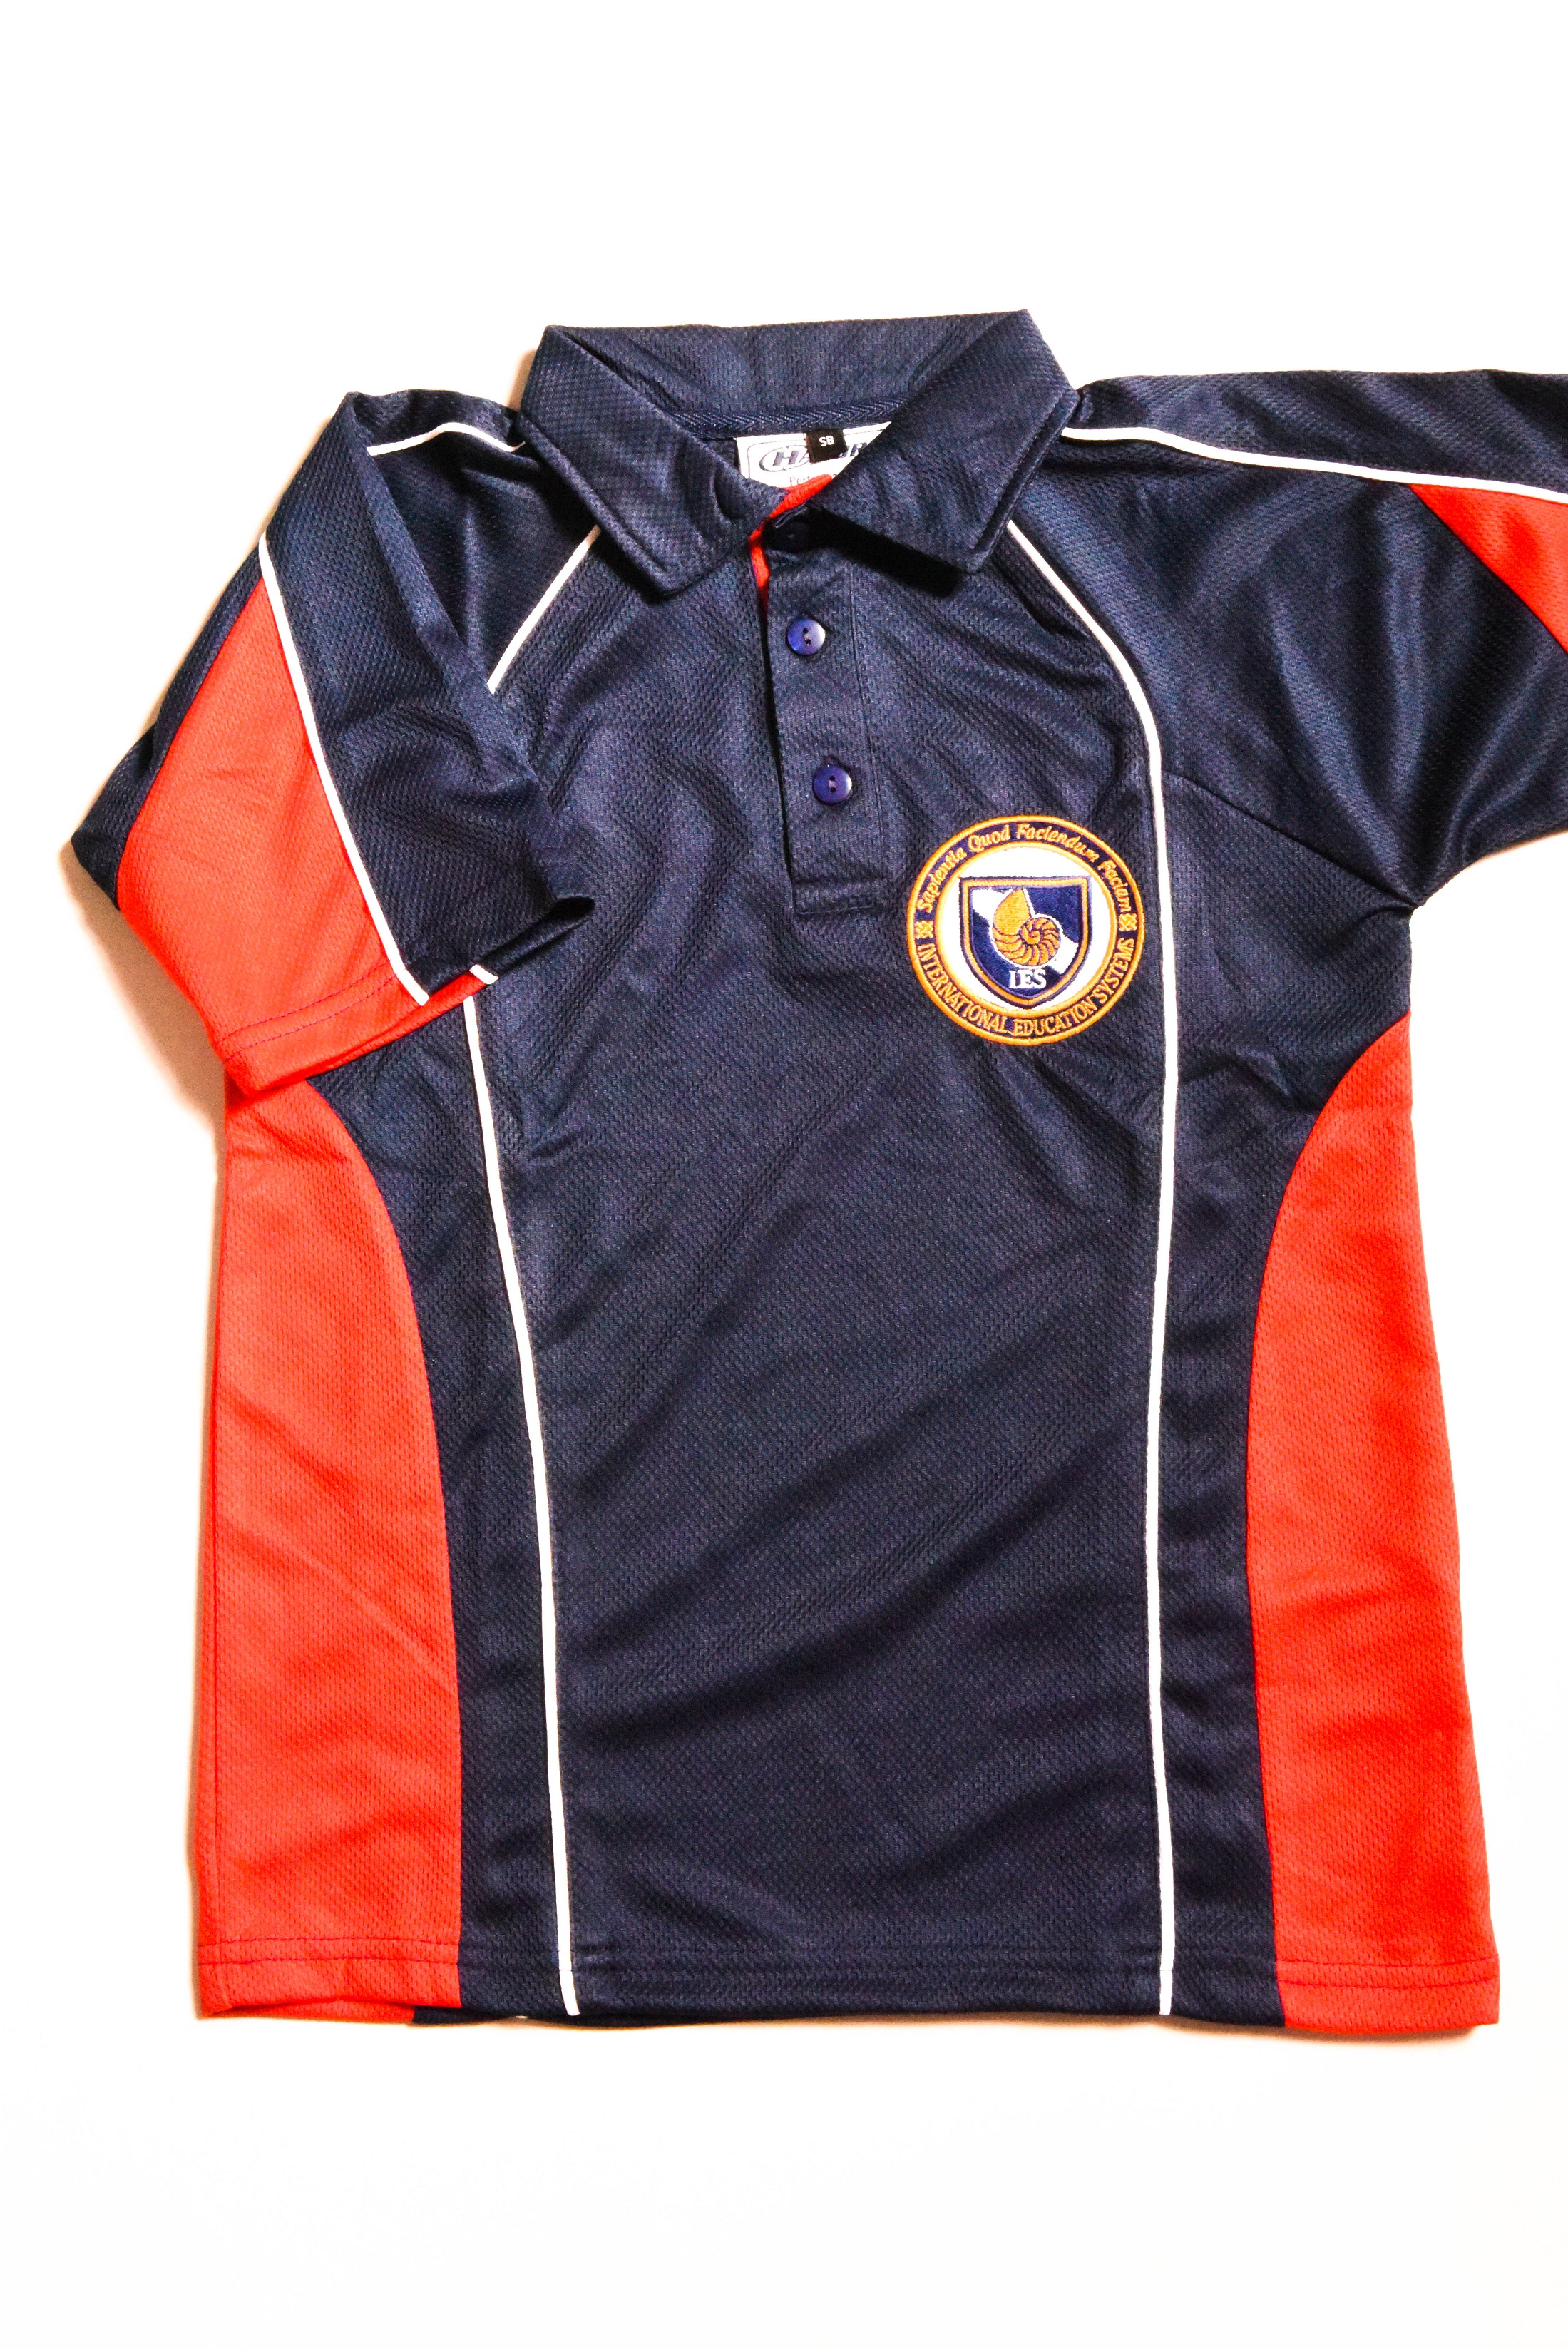 St John's School Unisex Sports Polo Shirt - XXXSB / Age 3-4